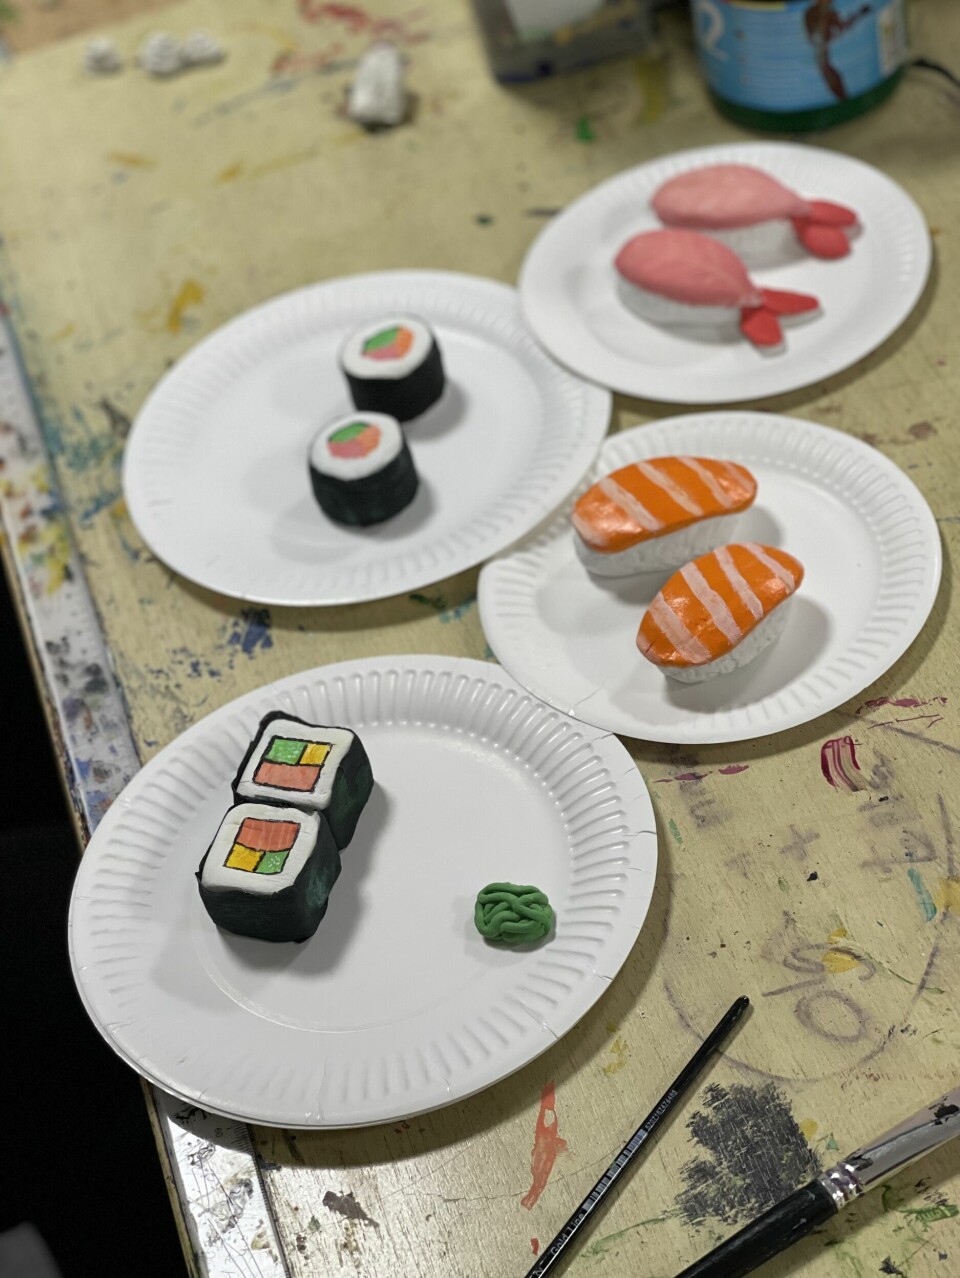 Nogle af de elever, der skulle lave instafriendly mad, valgte sushi, fordi det ser dyrt, smart og flot ud.